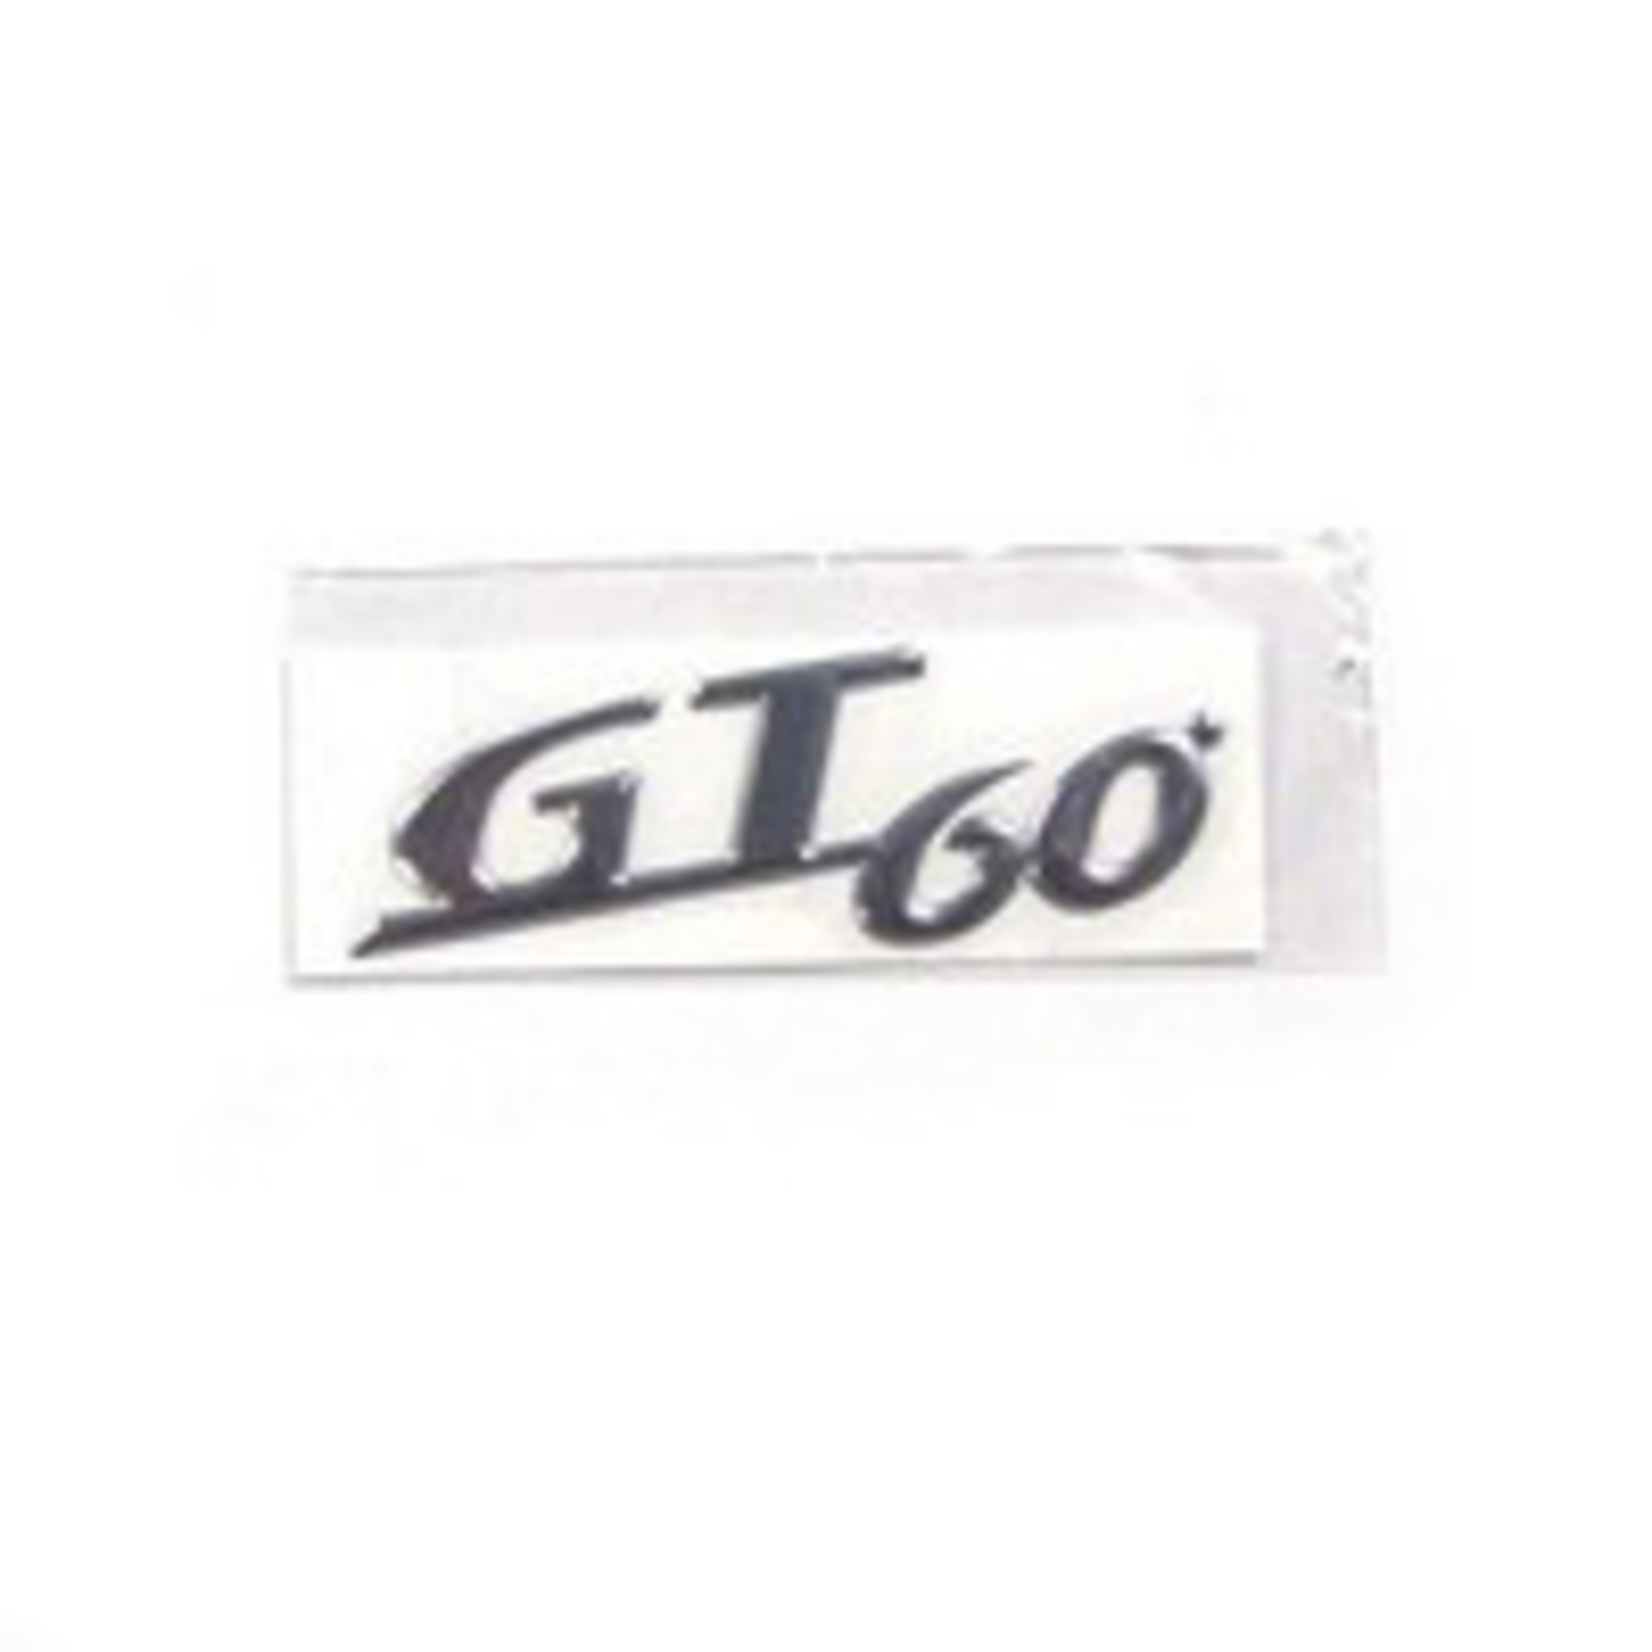 Parts Emblem, “GT60” Cowl